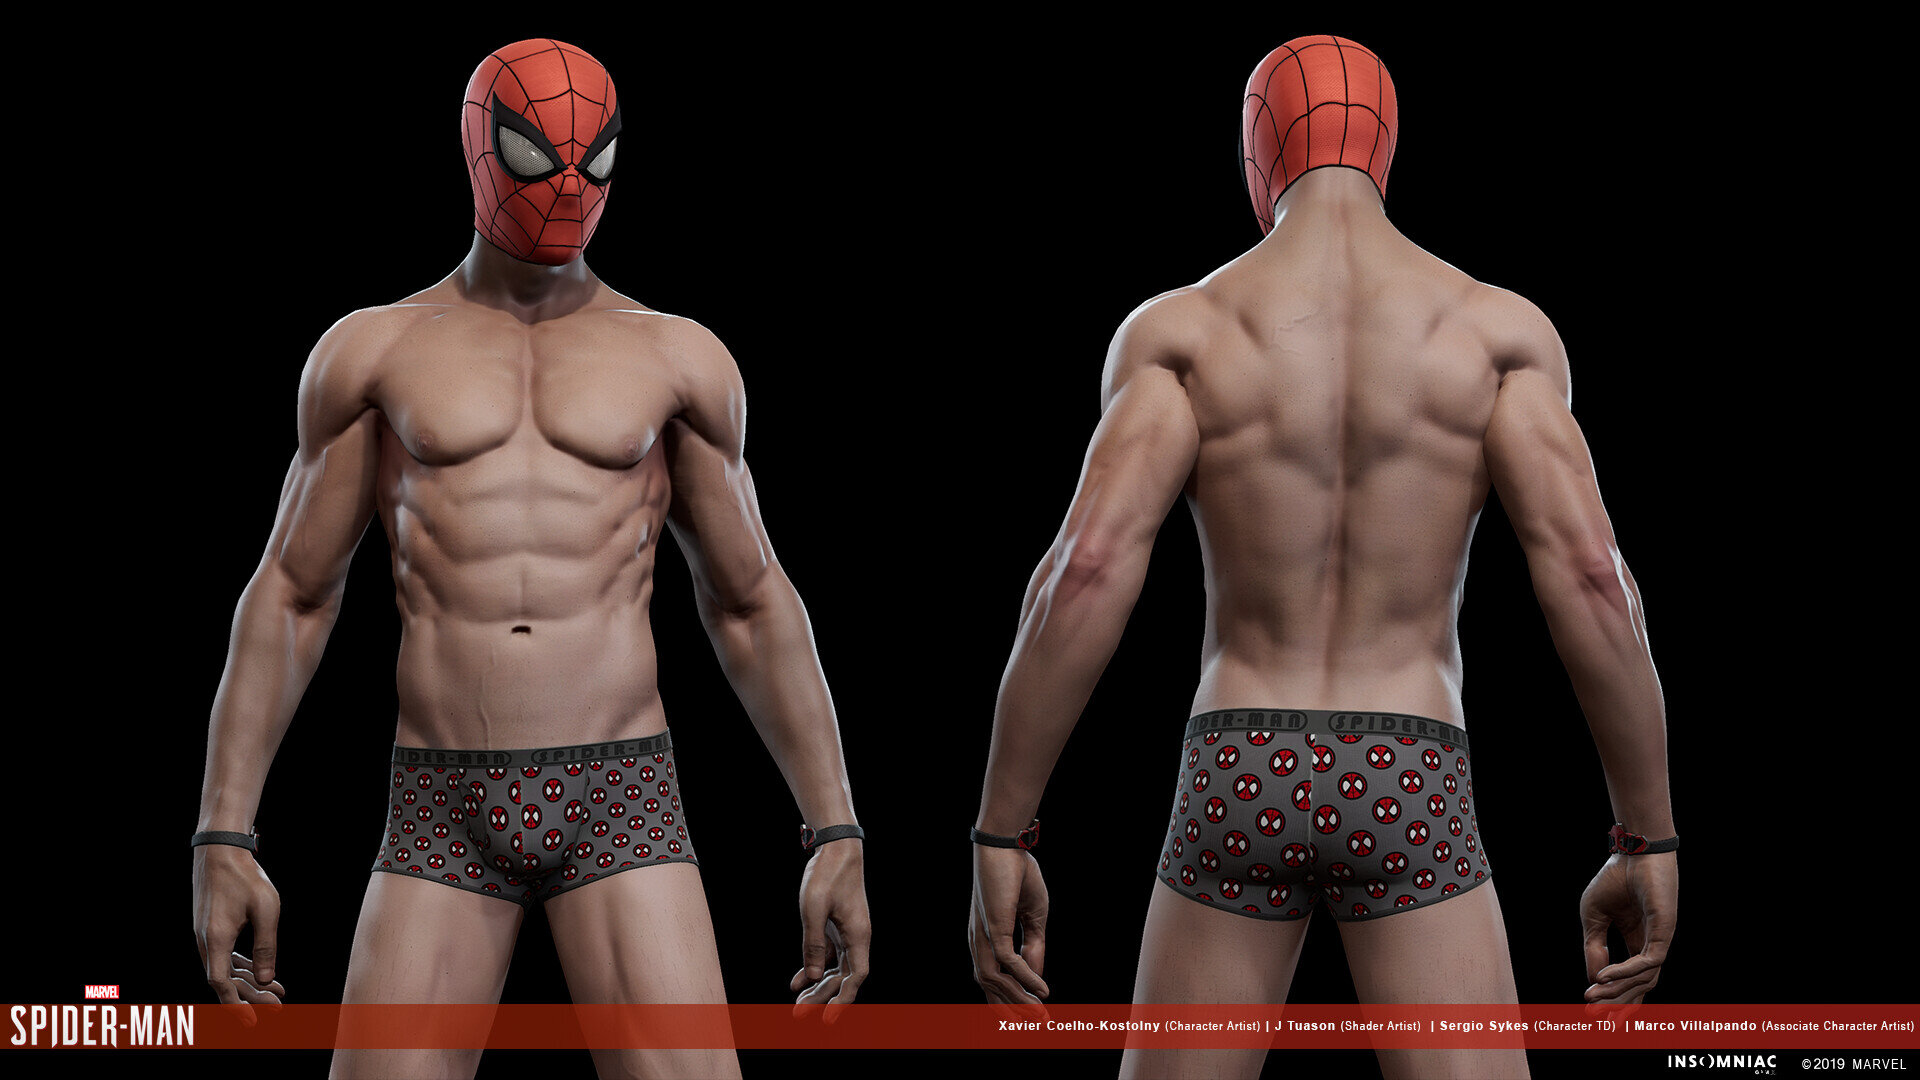 Marvel's Spider-Man - Xavier Coelho-Kostolny - 3D Character Artist.